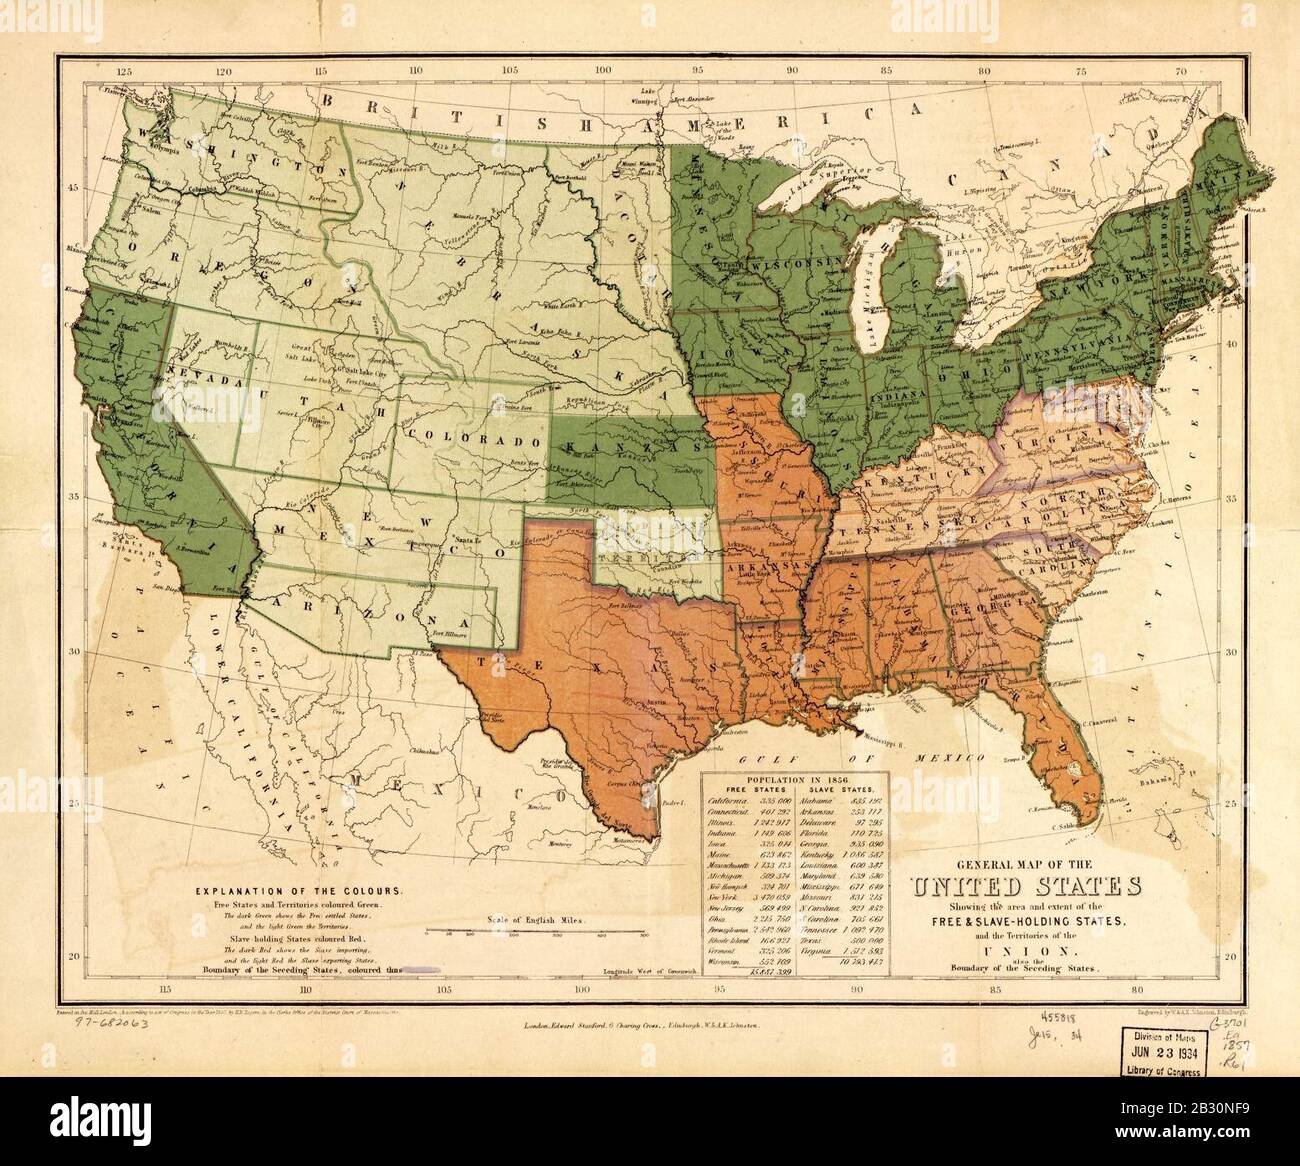 Allgemeine Karte der Vereinigten Staaten, die das Gebiet und den Umfang der freien und sklavenhaltenden Staaten und die Territorien der Union - auch die Grenze der abtretenden Staaten - zeigt Stockfoto